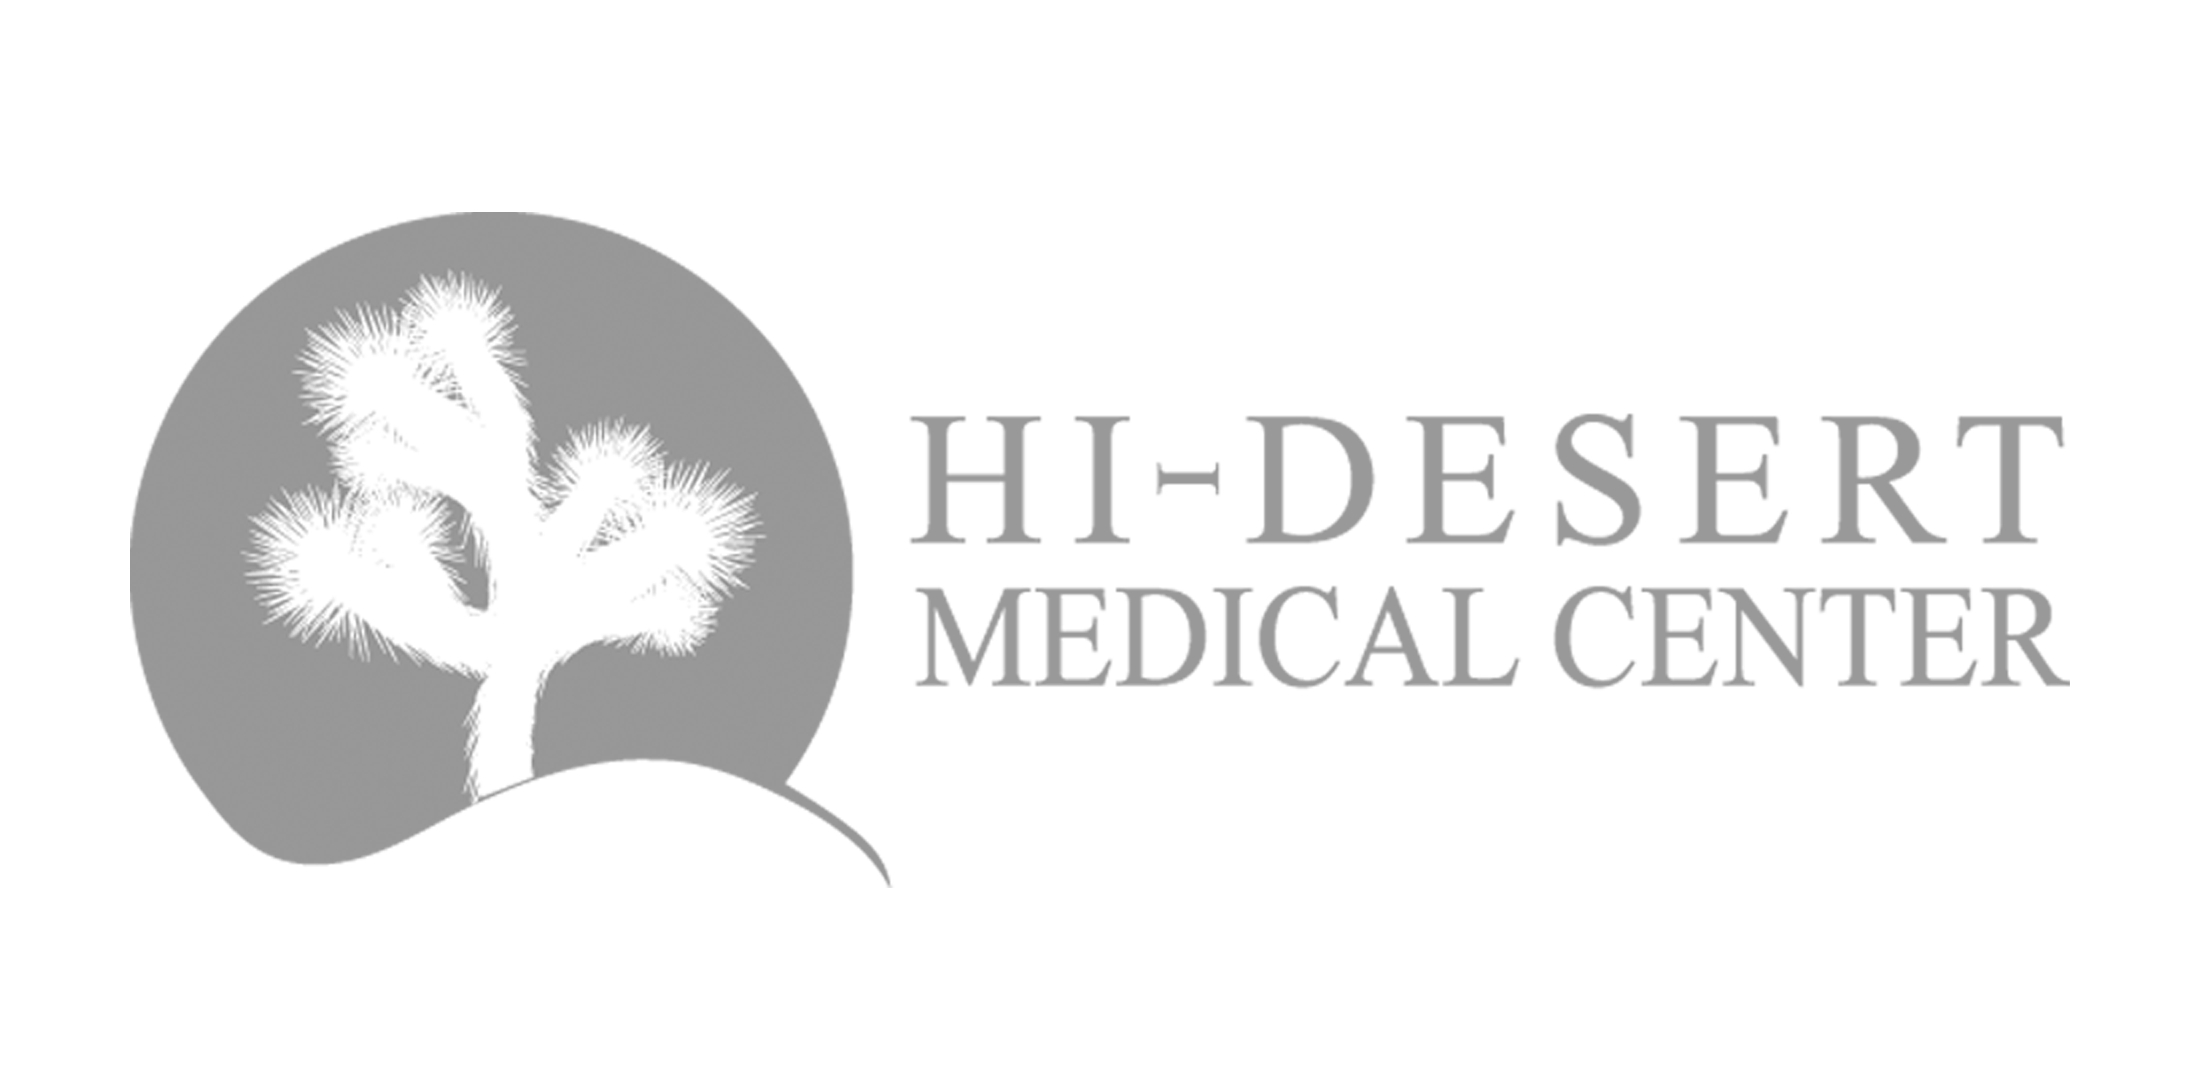 Hi-Desert Medical Center